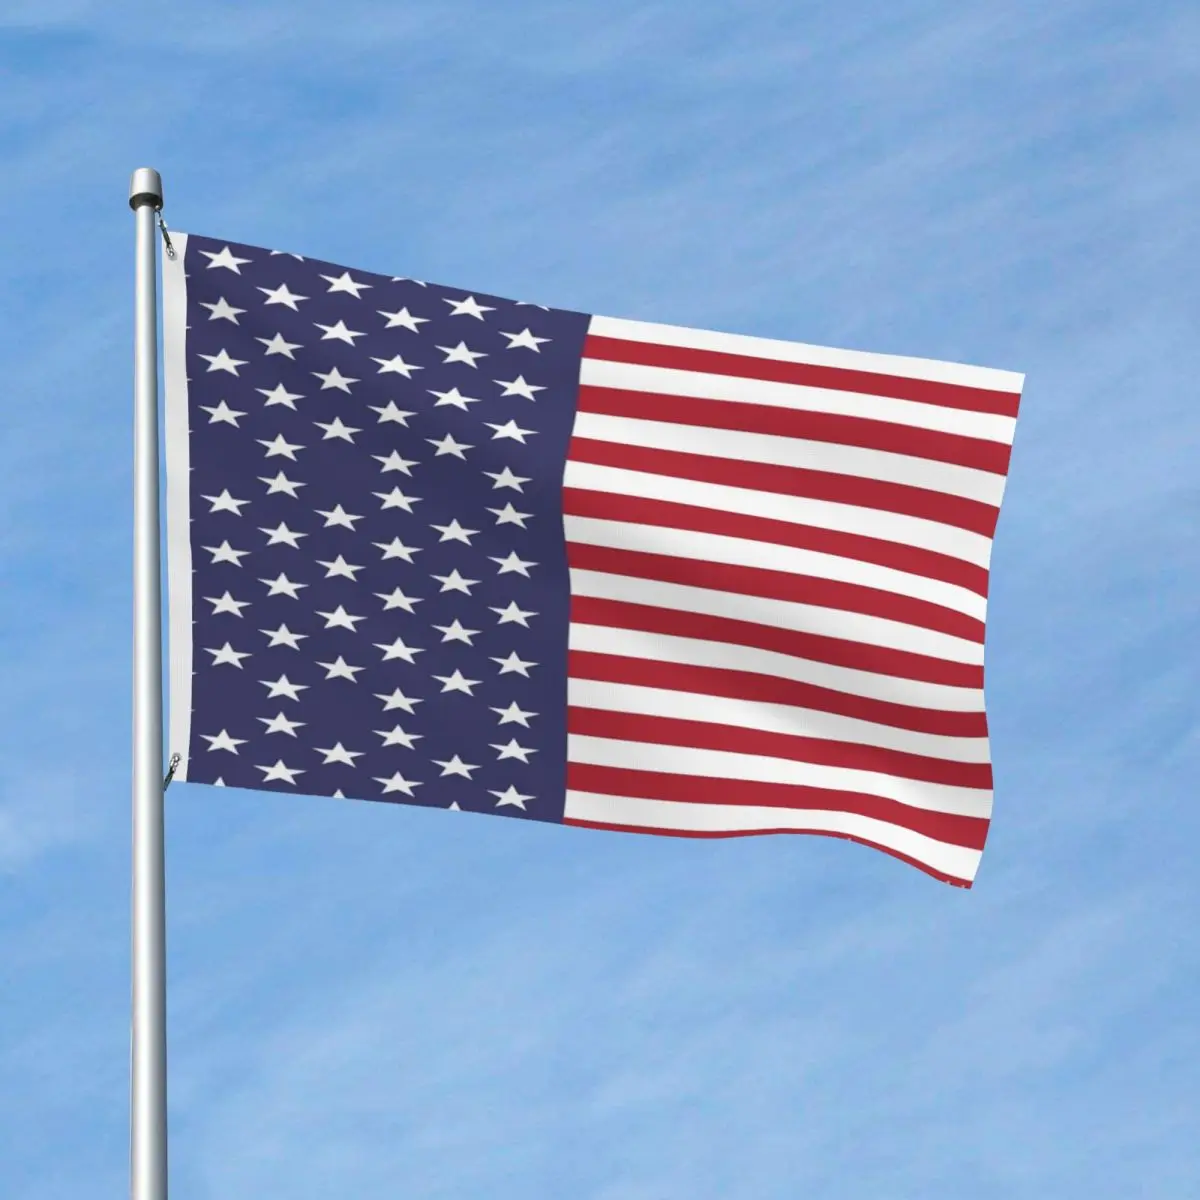 

США-американский флаг декор с флагами полиэфирный материал для помещений устойчивый к выцветанию легкий